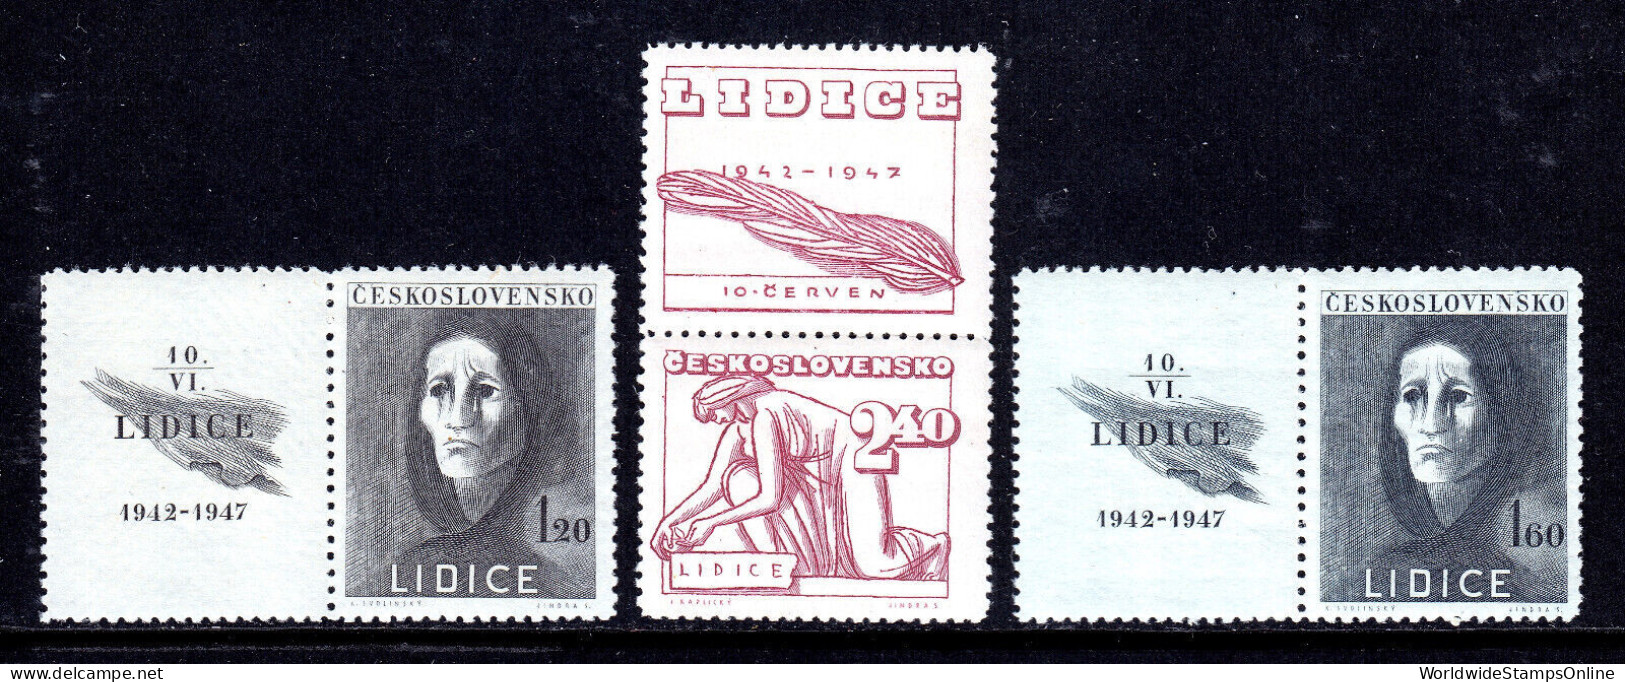 CZECHOSLOVAKIA — SCOTT 329-331 — 1947 LIDICE SET — MNH/MLH W/LABELS— SCV $15 - Ongebruikt